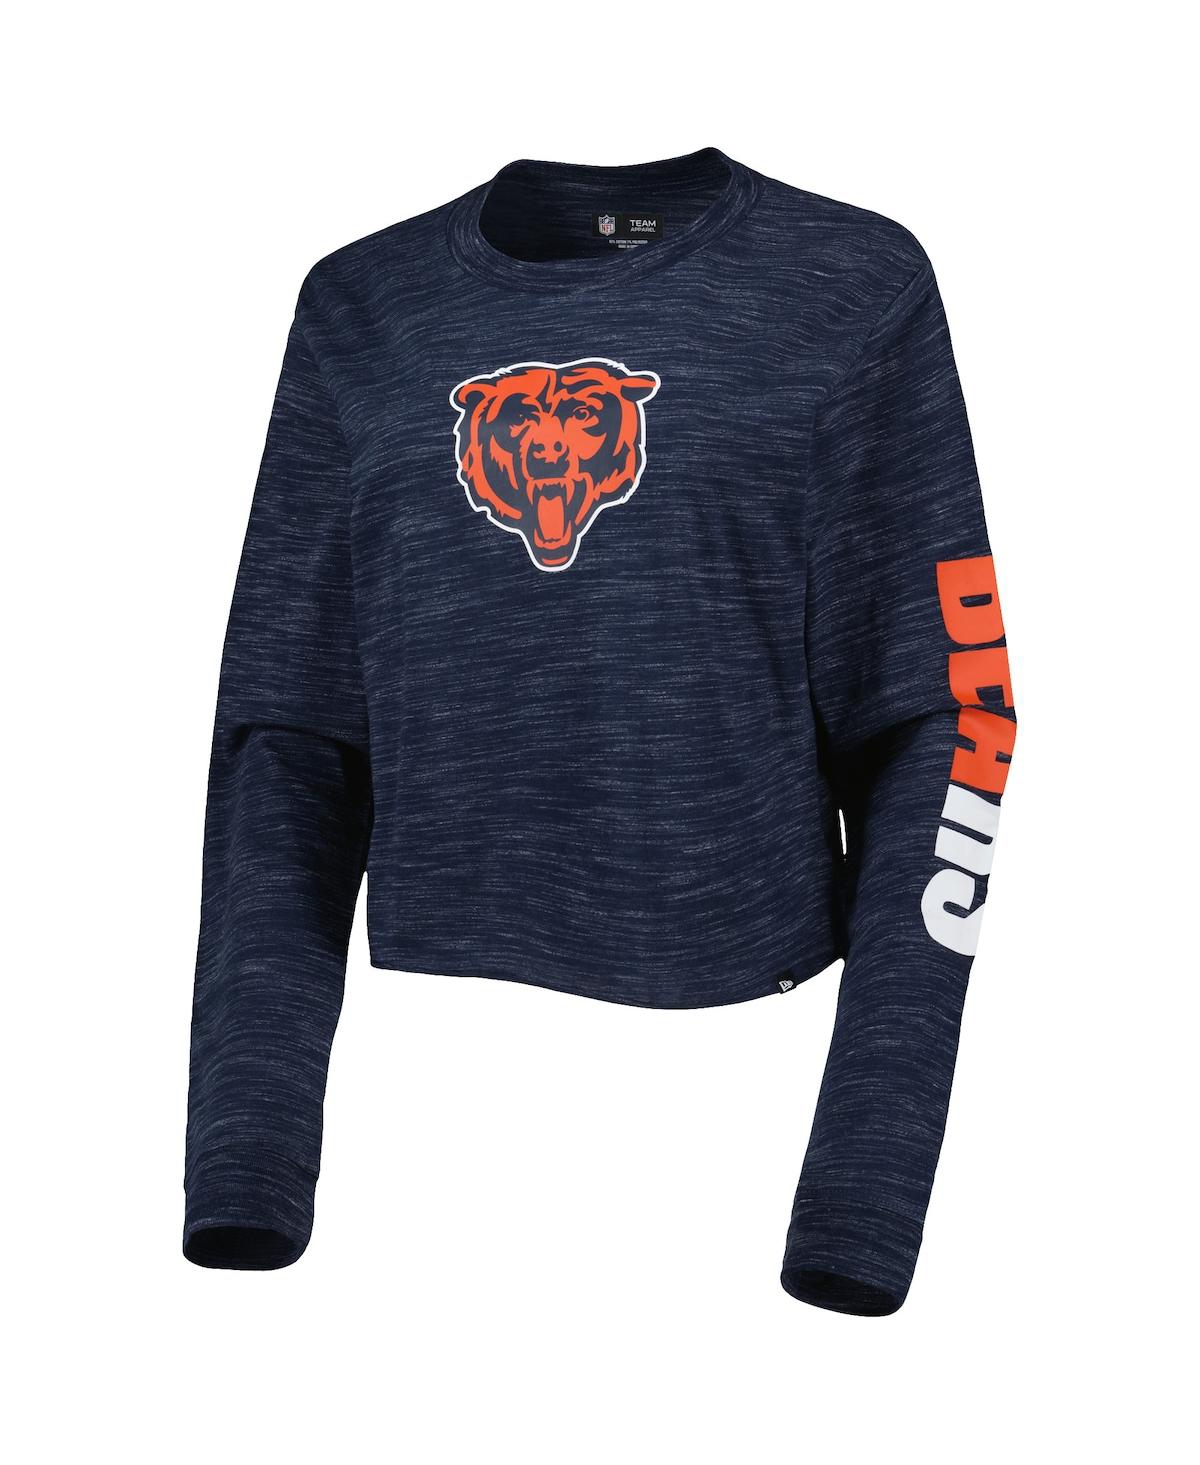 Shop New Era Women's  Navy Chicago Bears Crop Long Sleeve T-shirt